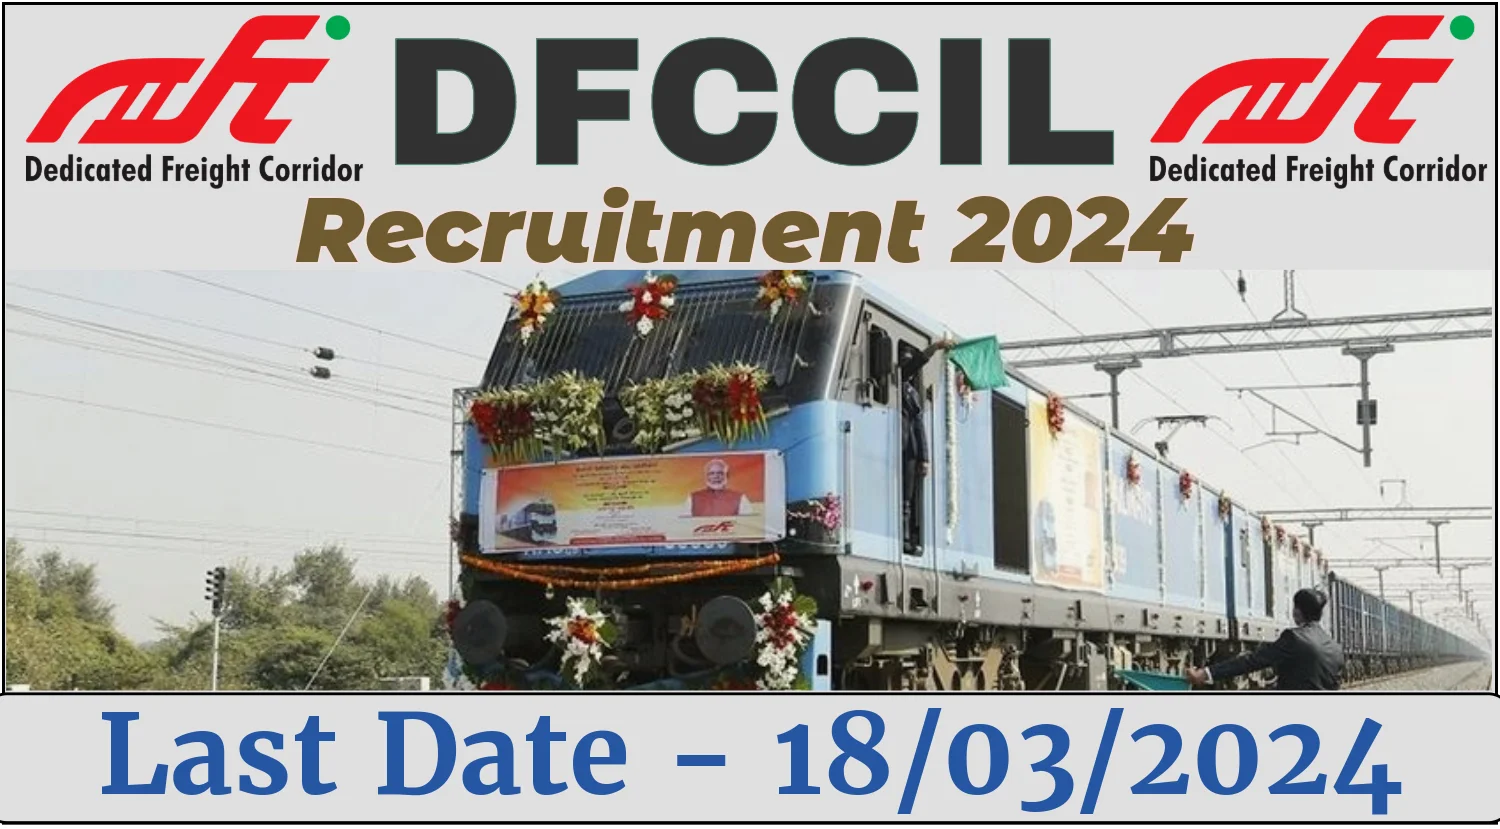 DFCCIL Recruitment 2024